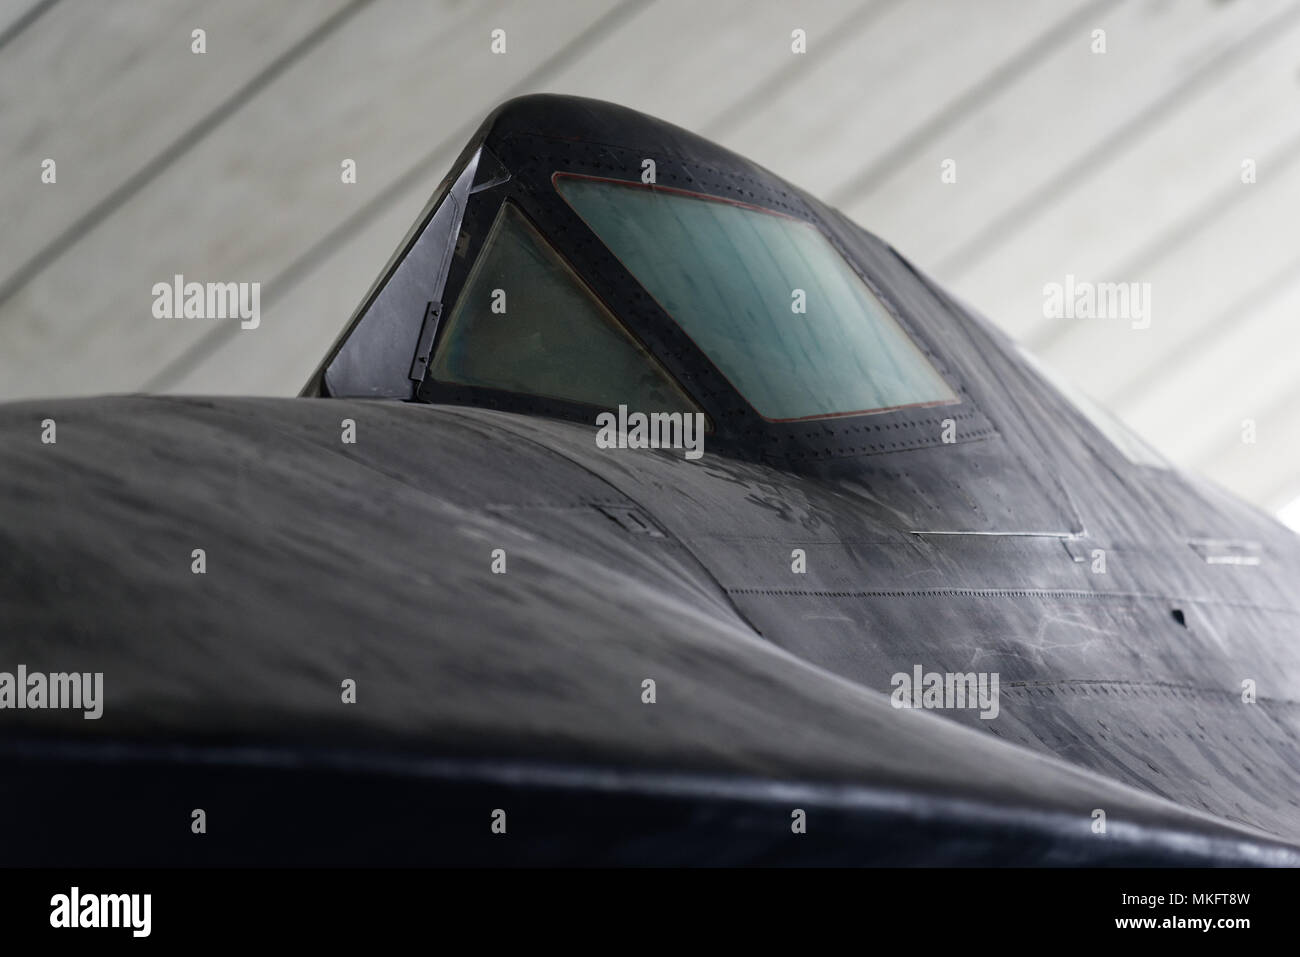 Le cockpit couvert de la Lockheed SR-71 Blackbird avion espion Banque D'Images